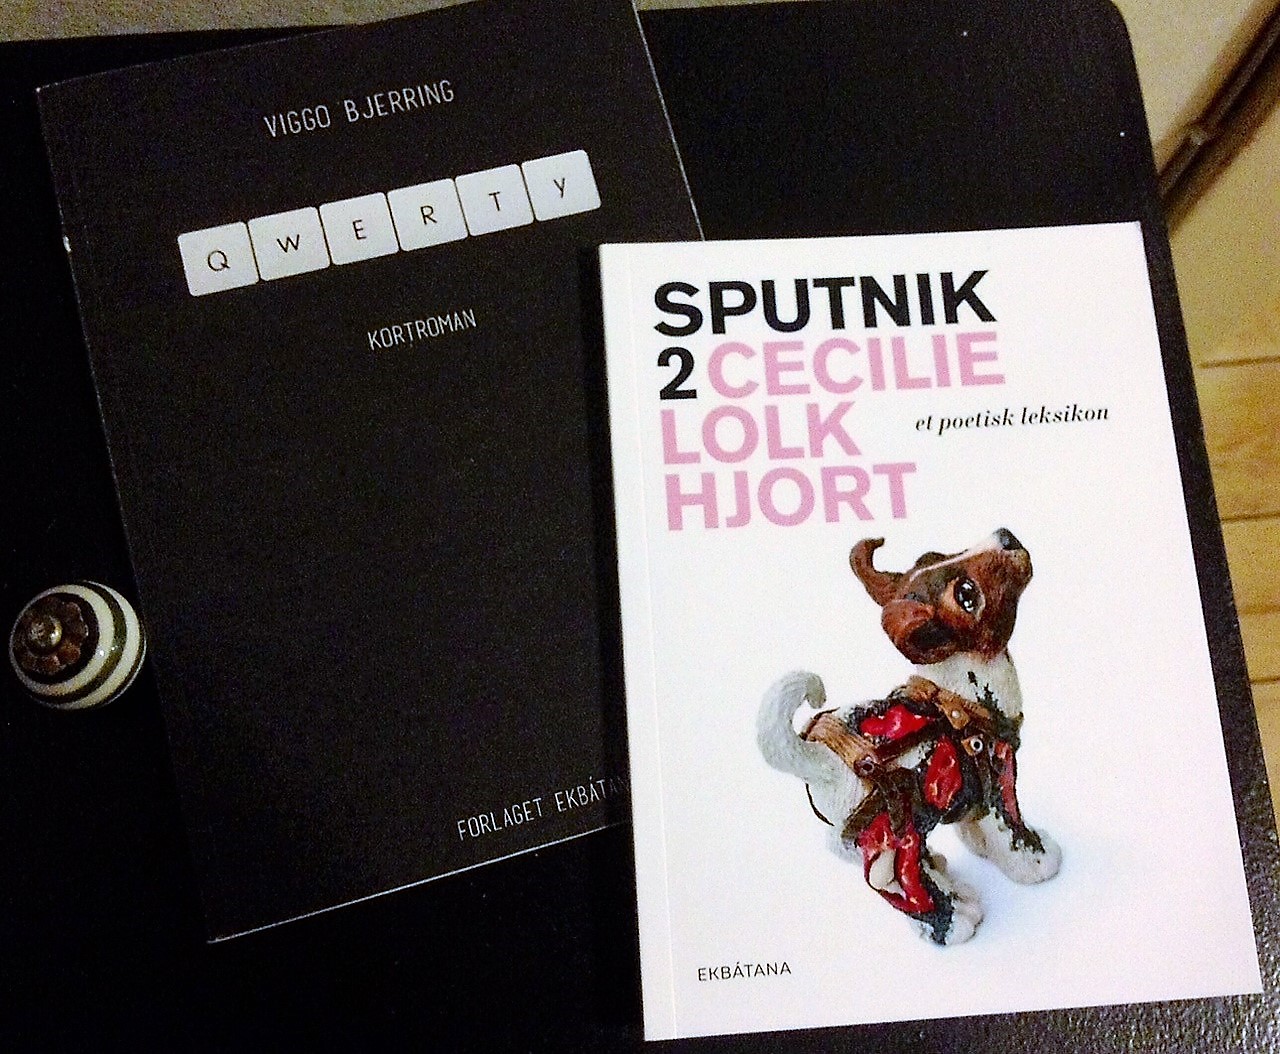 gode anmeldelser, Sputnik 2, cecilie lolk hjort, viggo bjerring, qwerty, poetisk leksikon